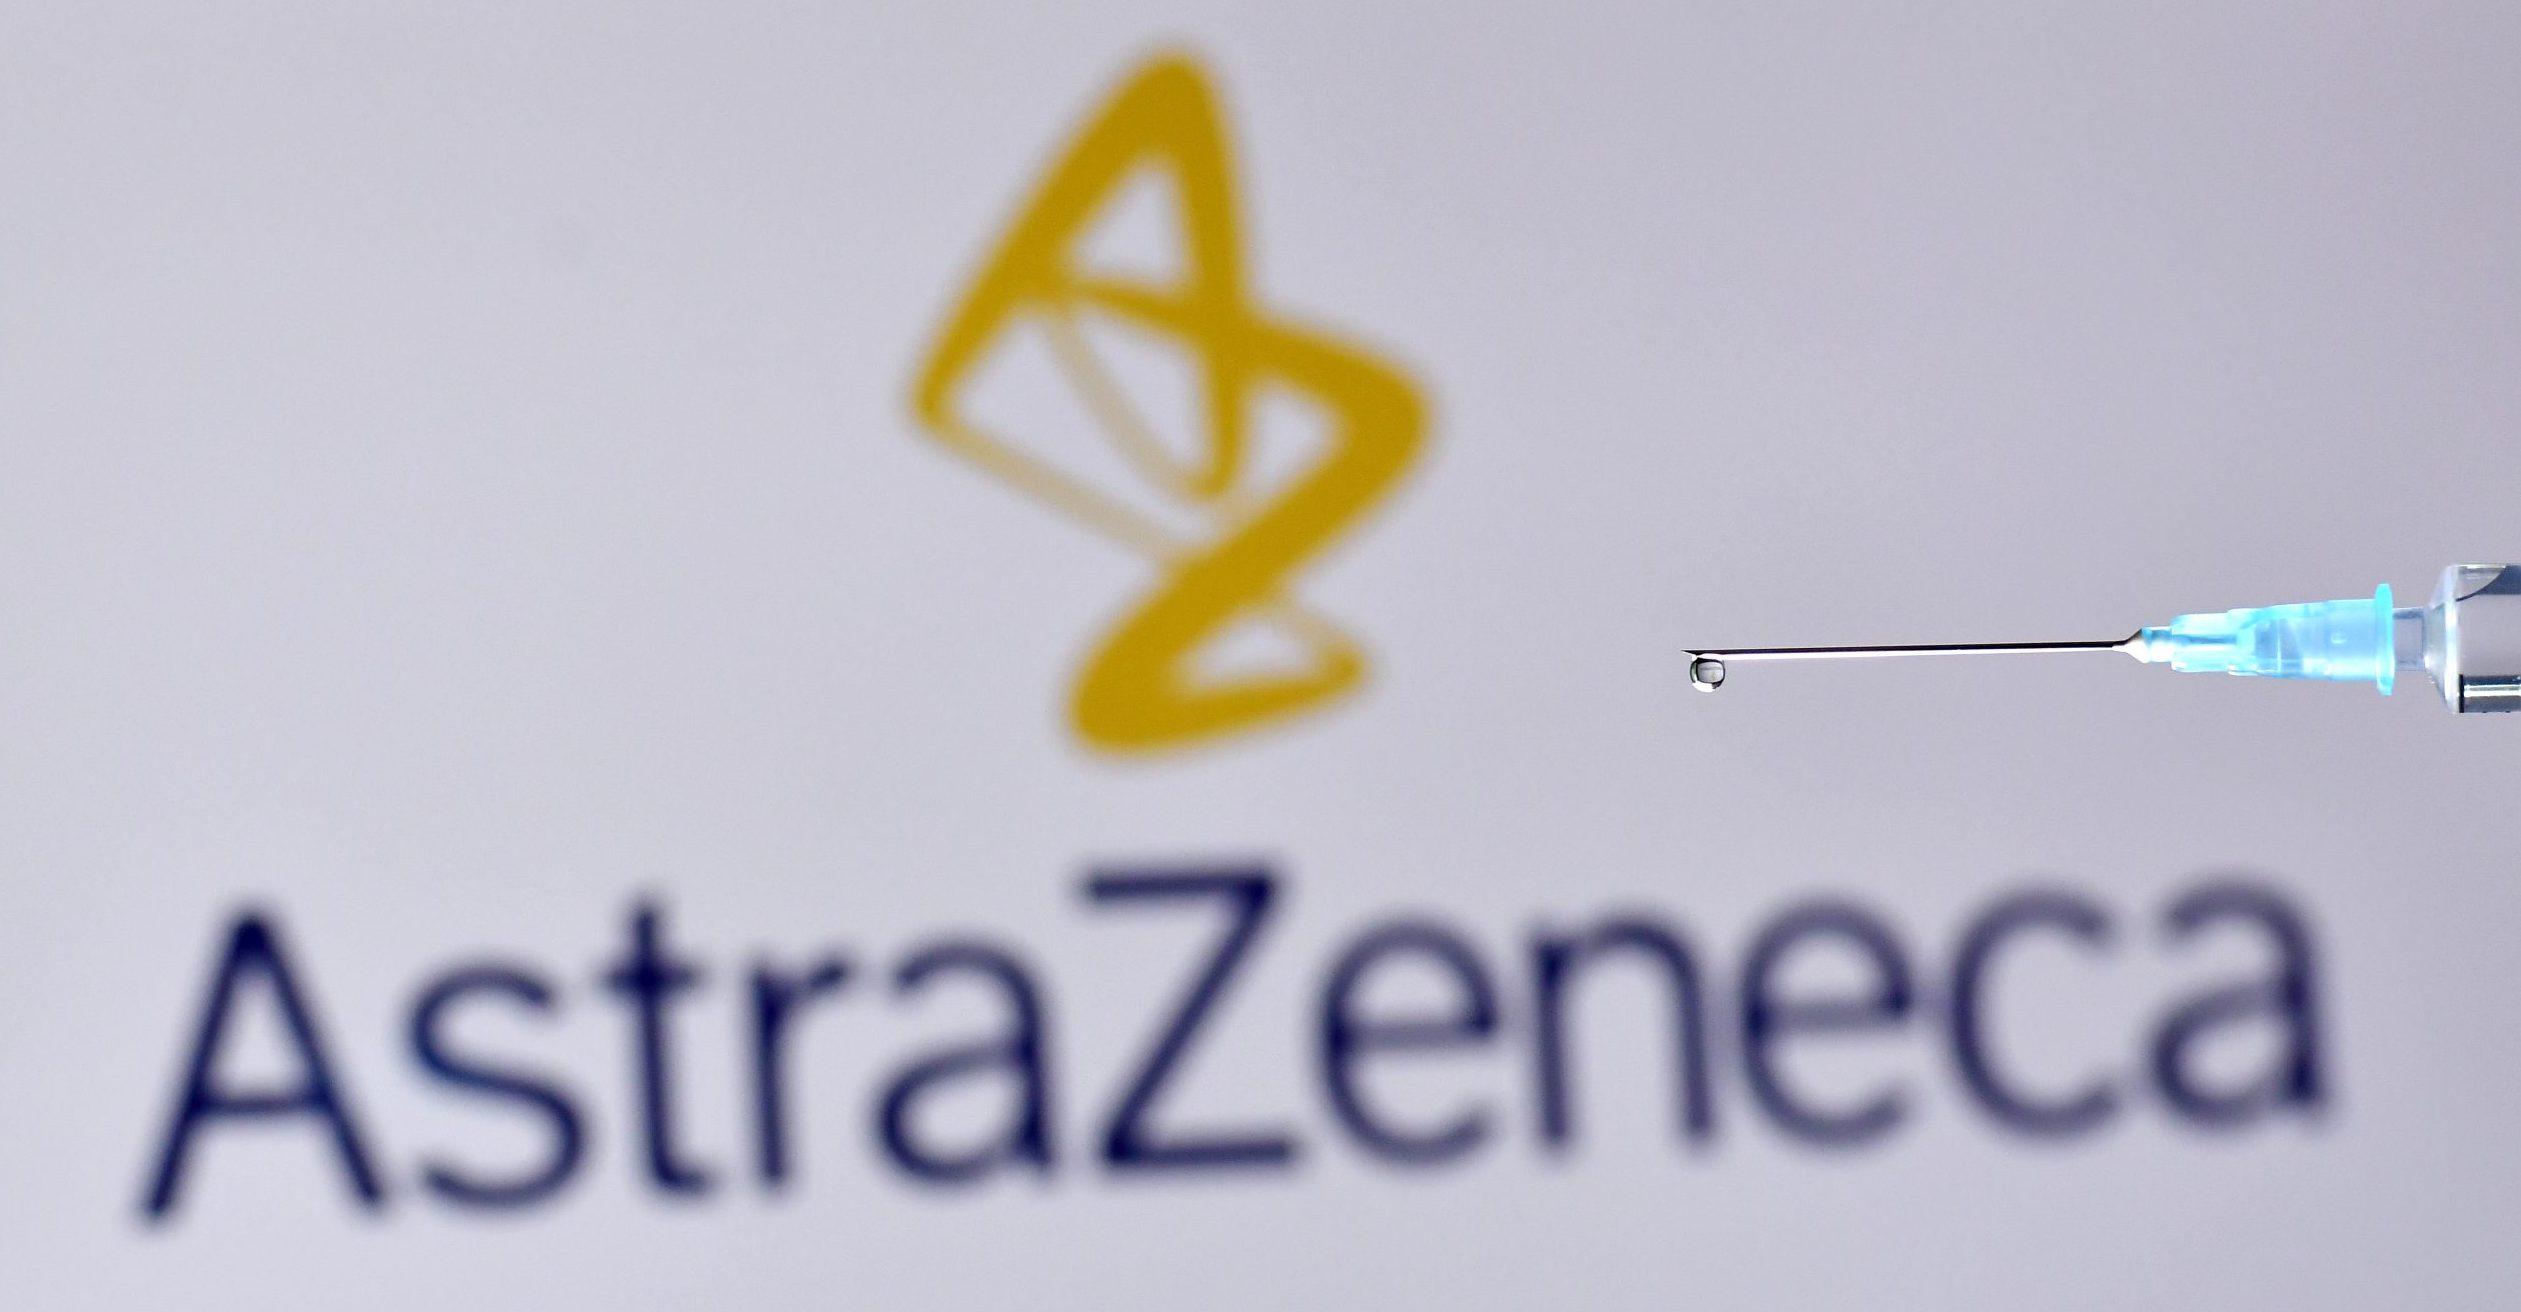 Agencia Europea aprueba la vacuna de AstraZeneca; acceso será amplio y justo, dice la farmaceútica